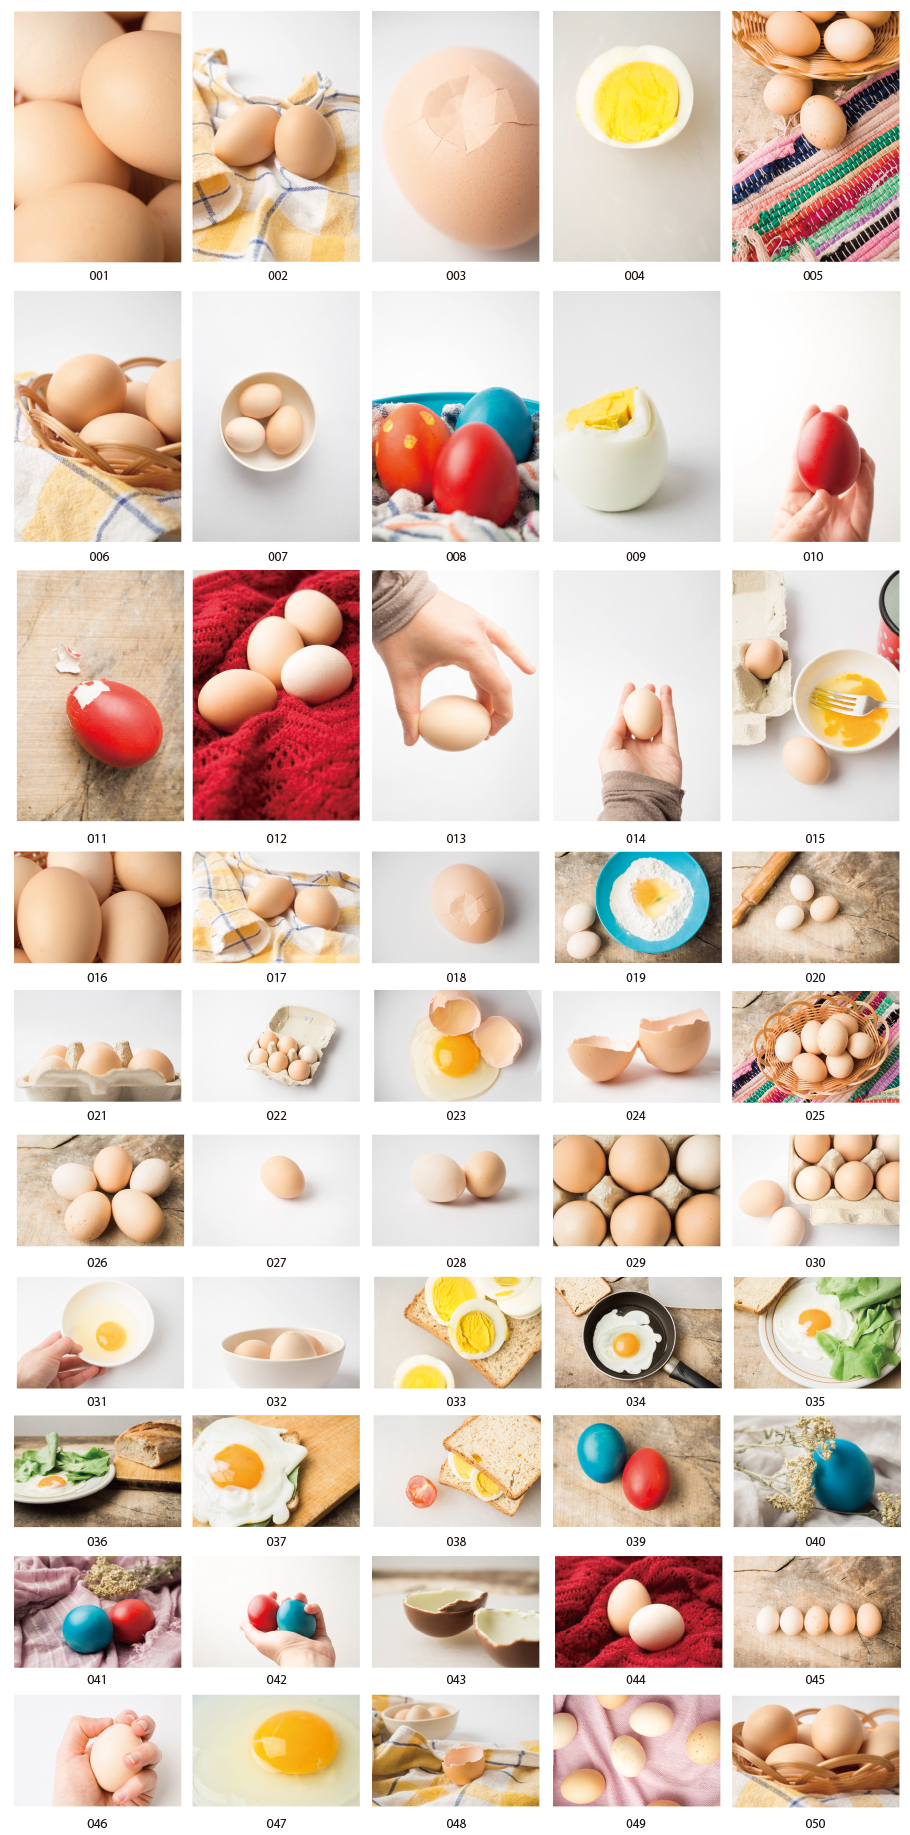 Egg photos vol.2